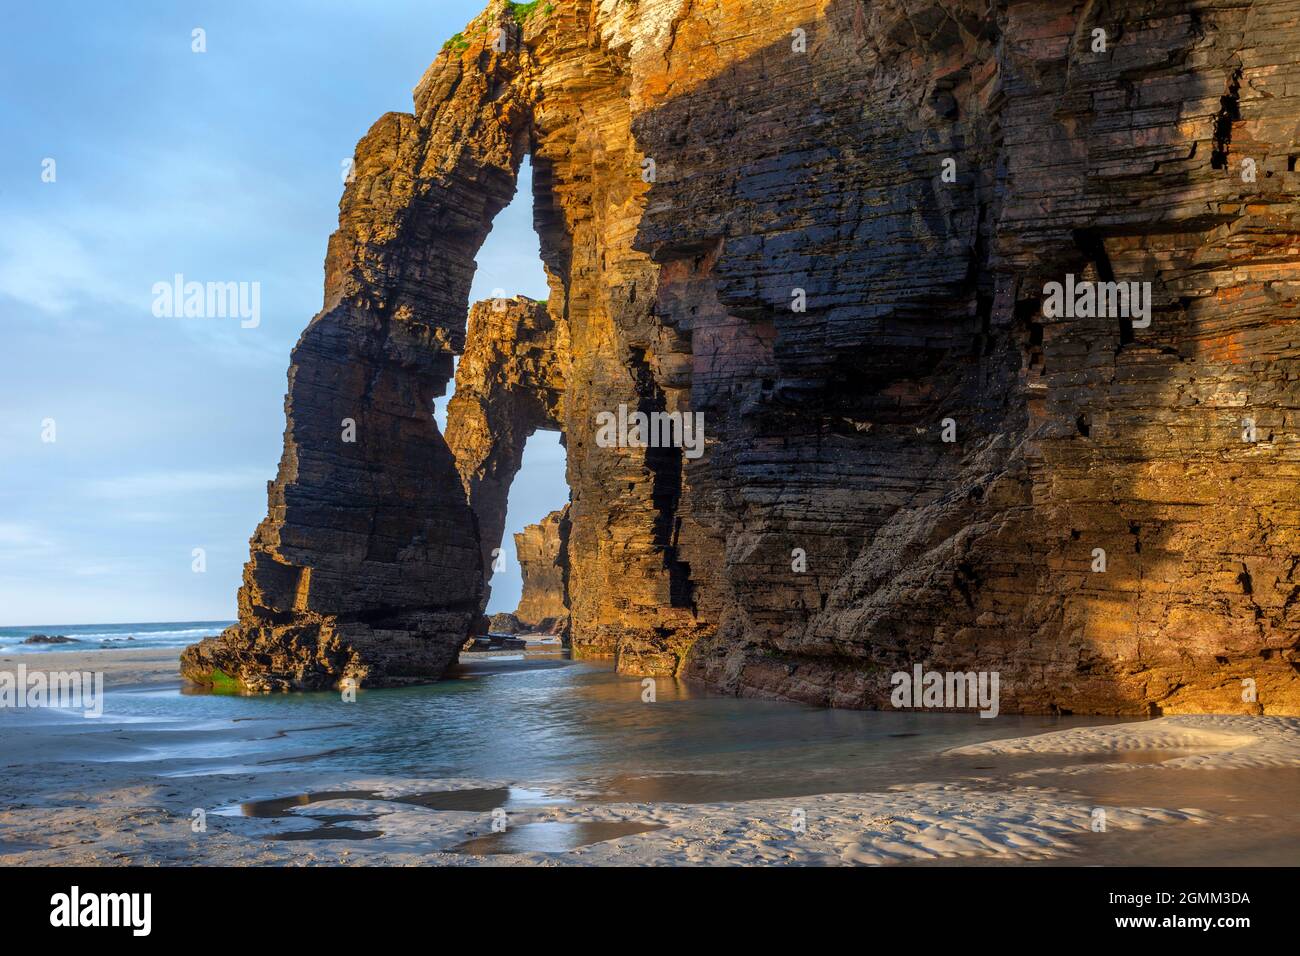 Les magnifiques formations de roches de la plage des cathédrales. Lugo, Galice, Espagne Banque D'Images